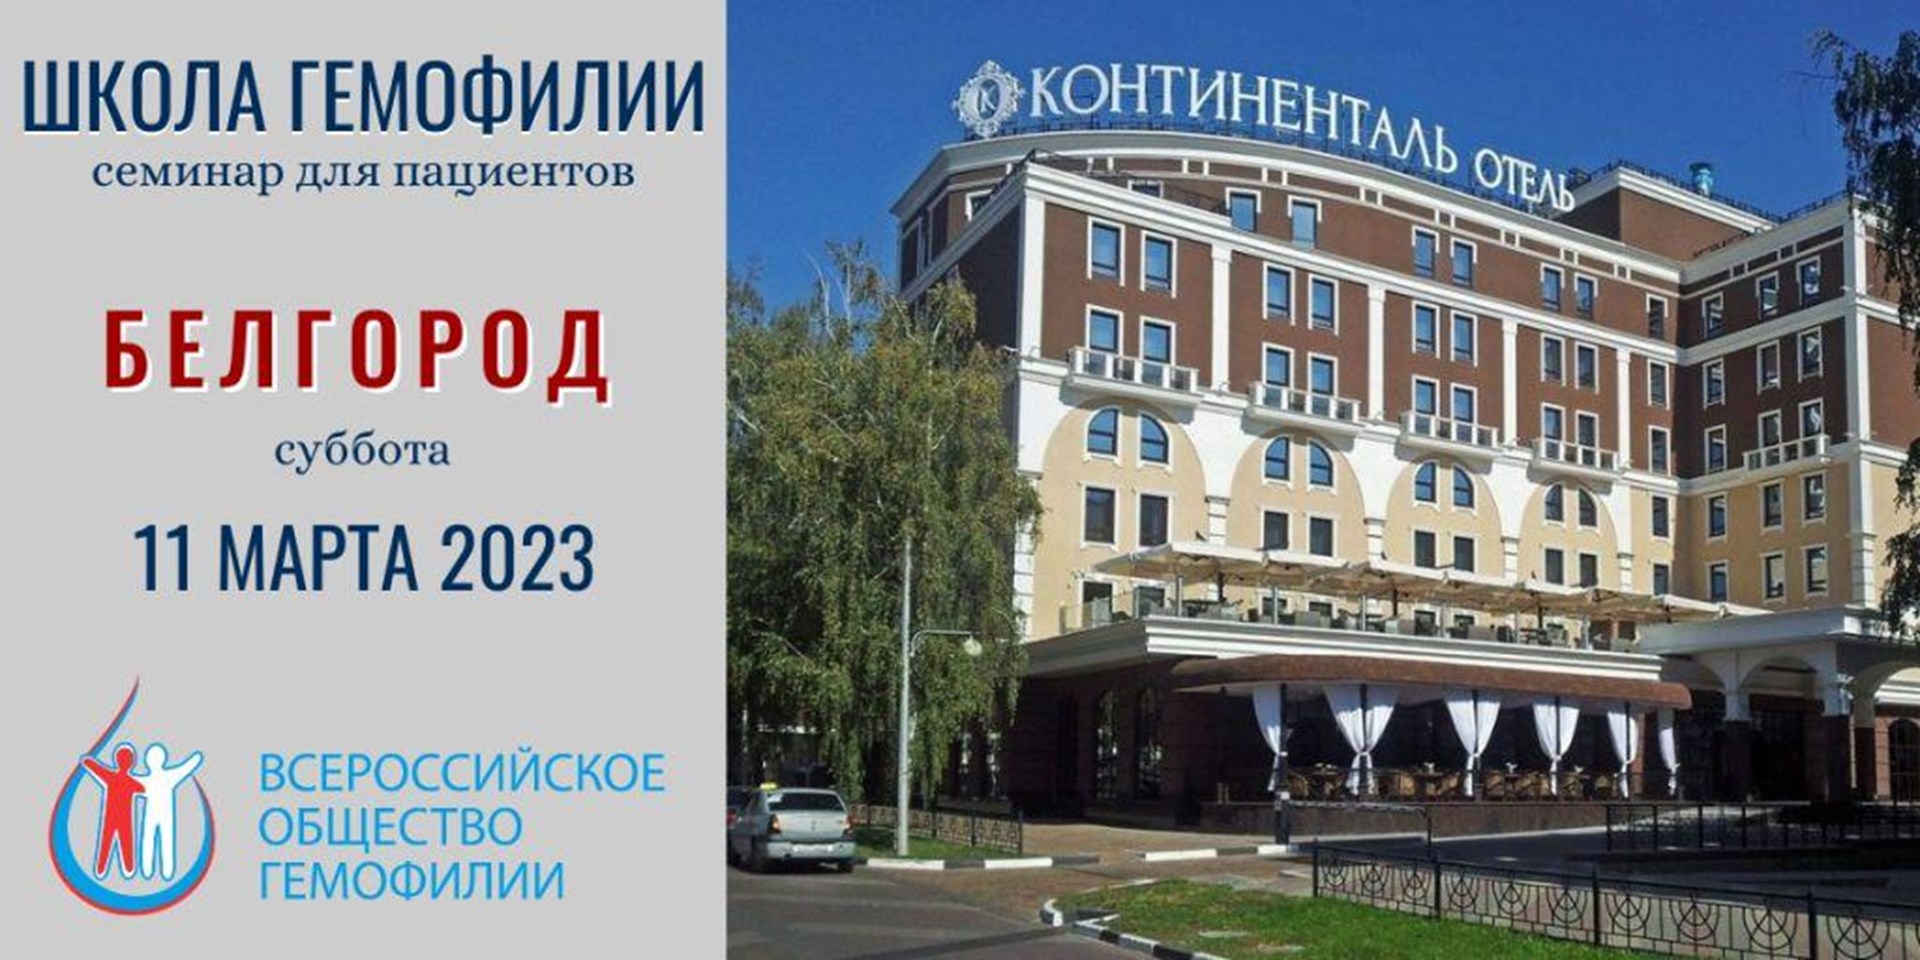 11 марта 2023 года в Белгороде пройдет Школа гемофилии 